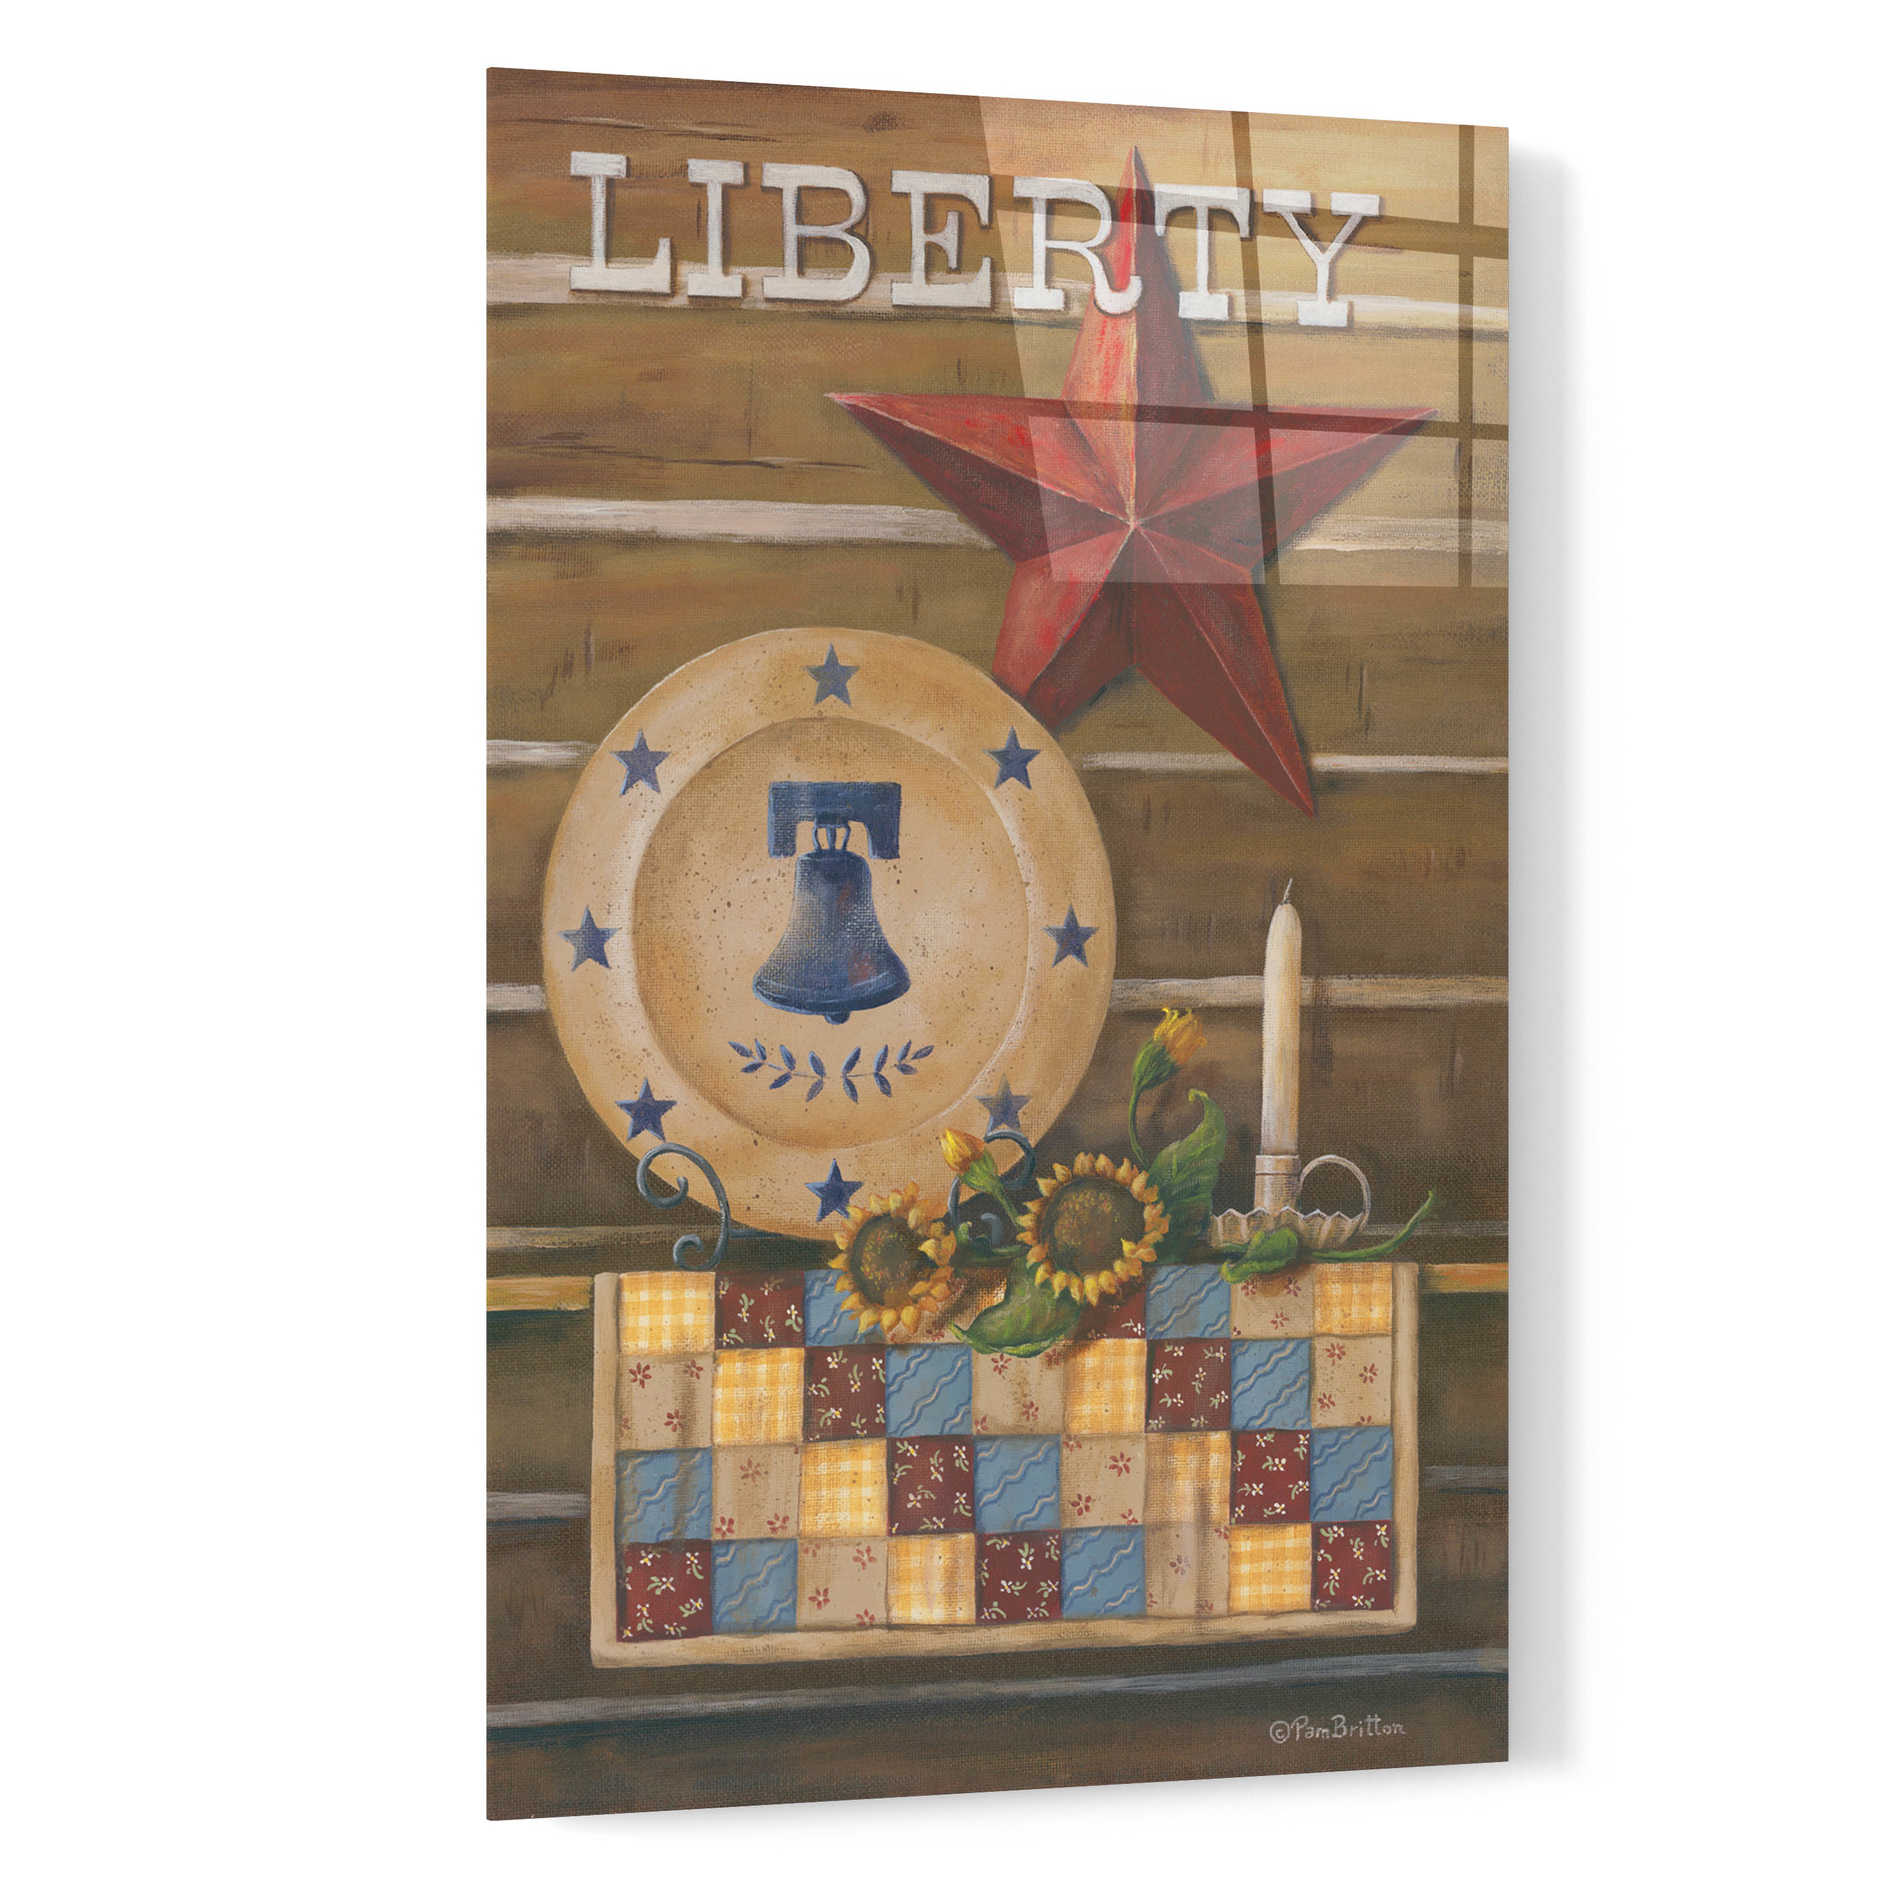 Epic Art 'Liberty' by Pam Britton, Acrylic Glass Wall Art,16x24